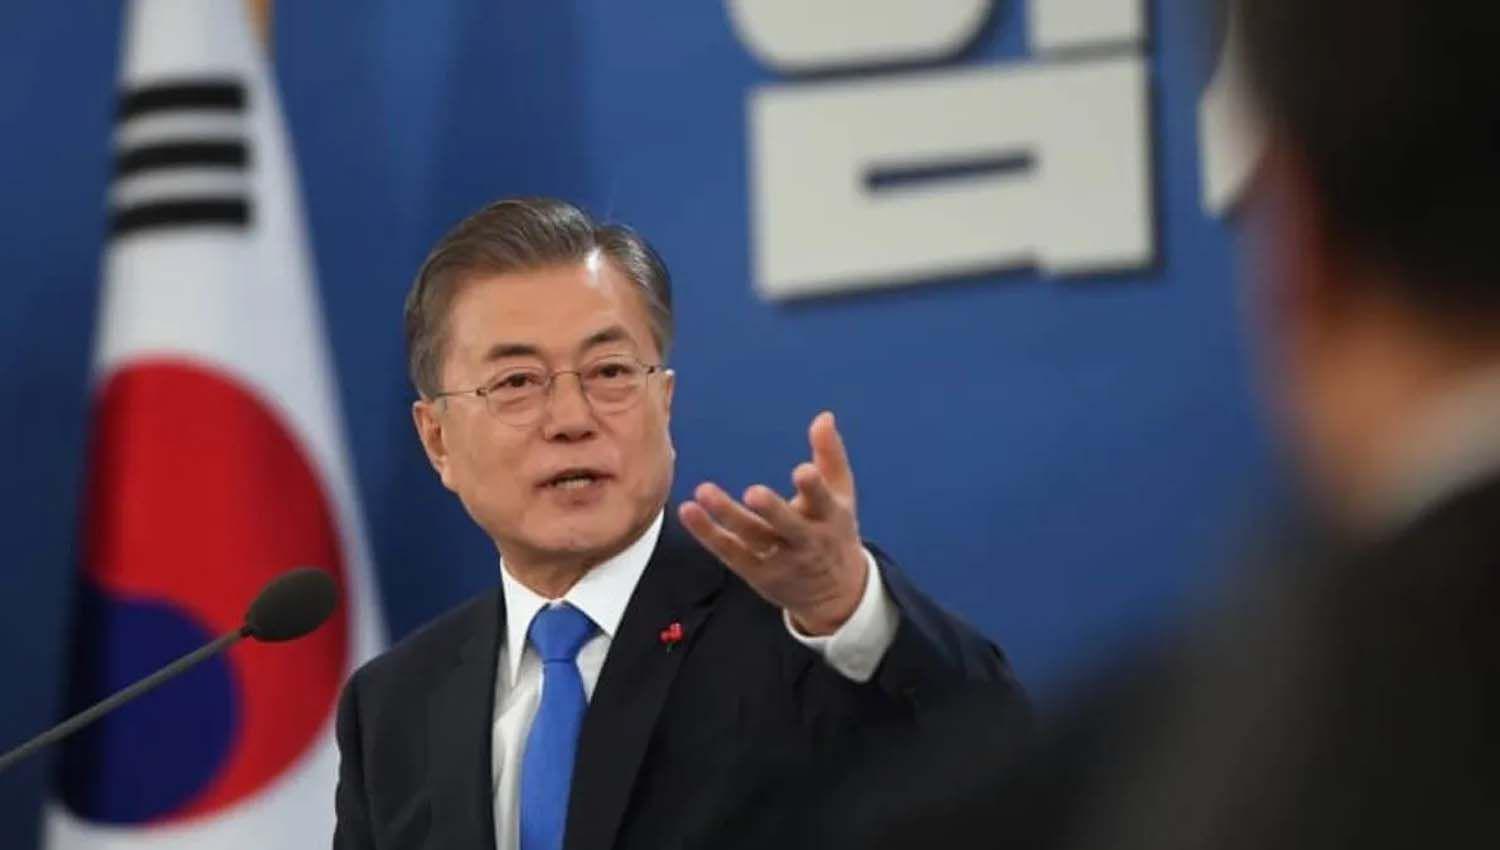 El Presidente mantuvo una conversacioacuten con su par de la Repuacuteblica de Corea